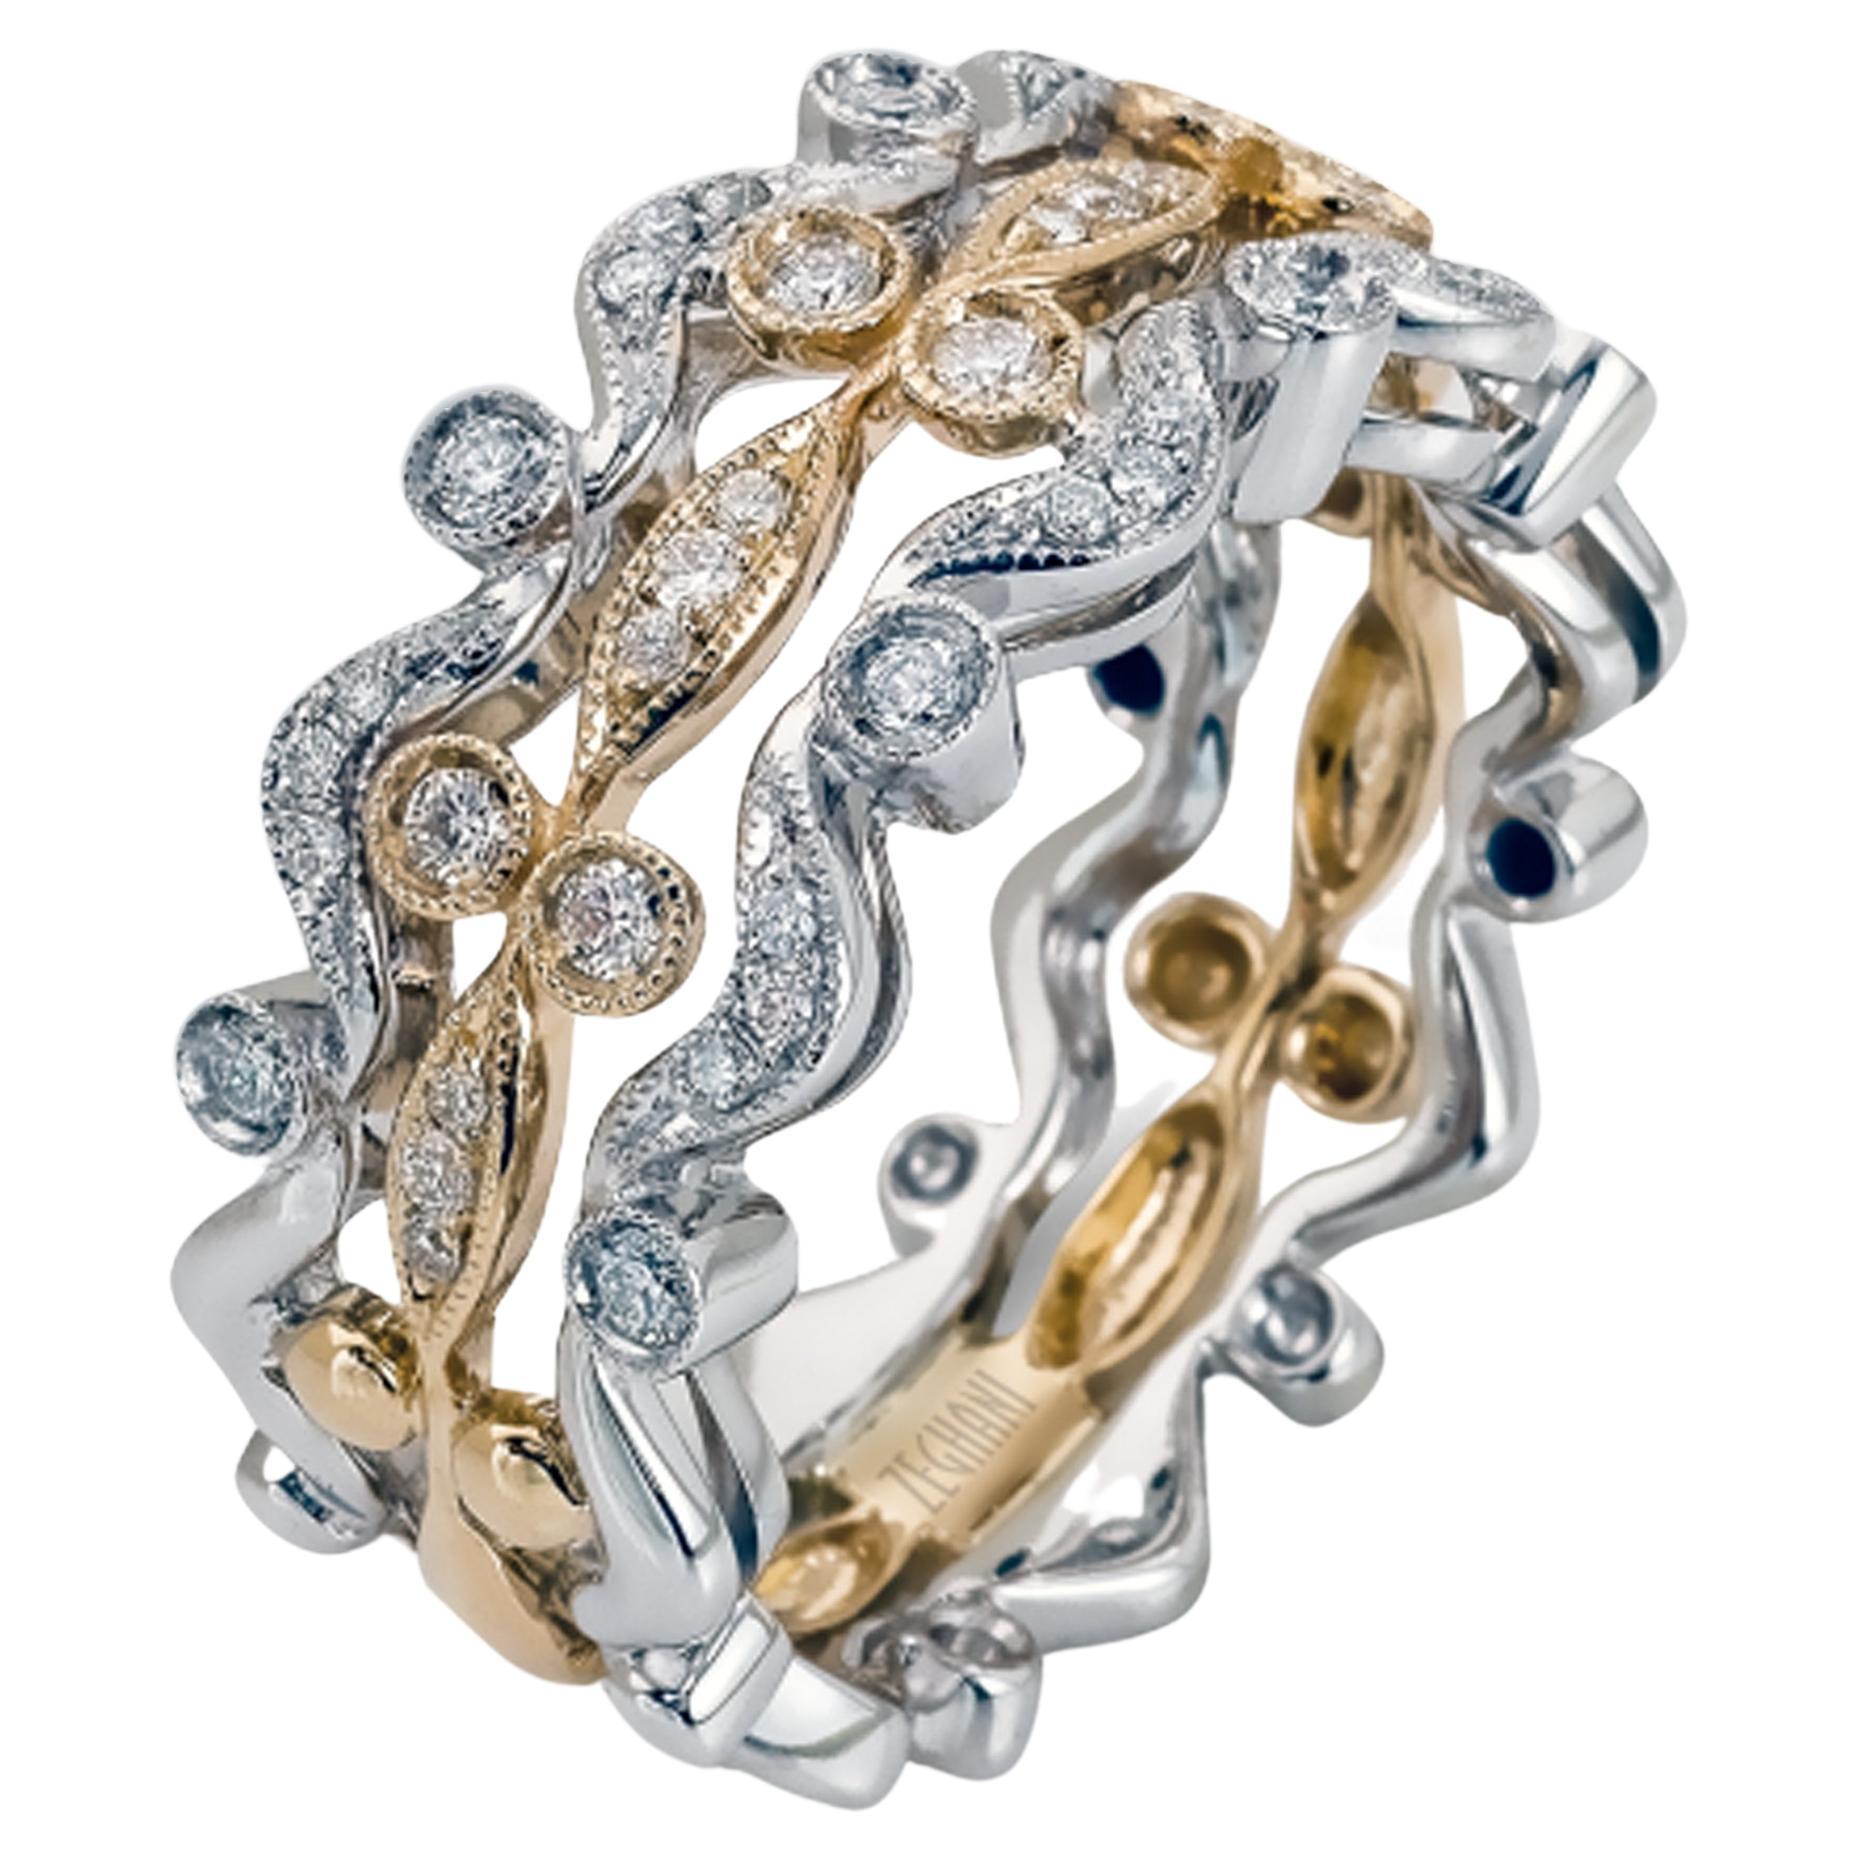 Vintage-inspirierter Vintage-Ring, dreireihiger rechte Handring, 14 Karat Roségold mit Diamanten